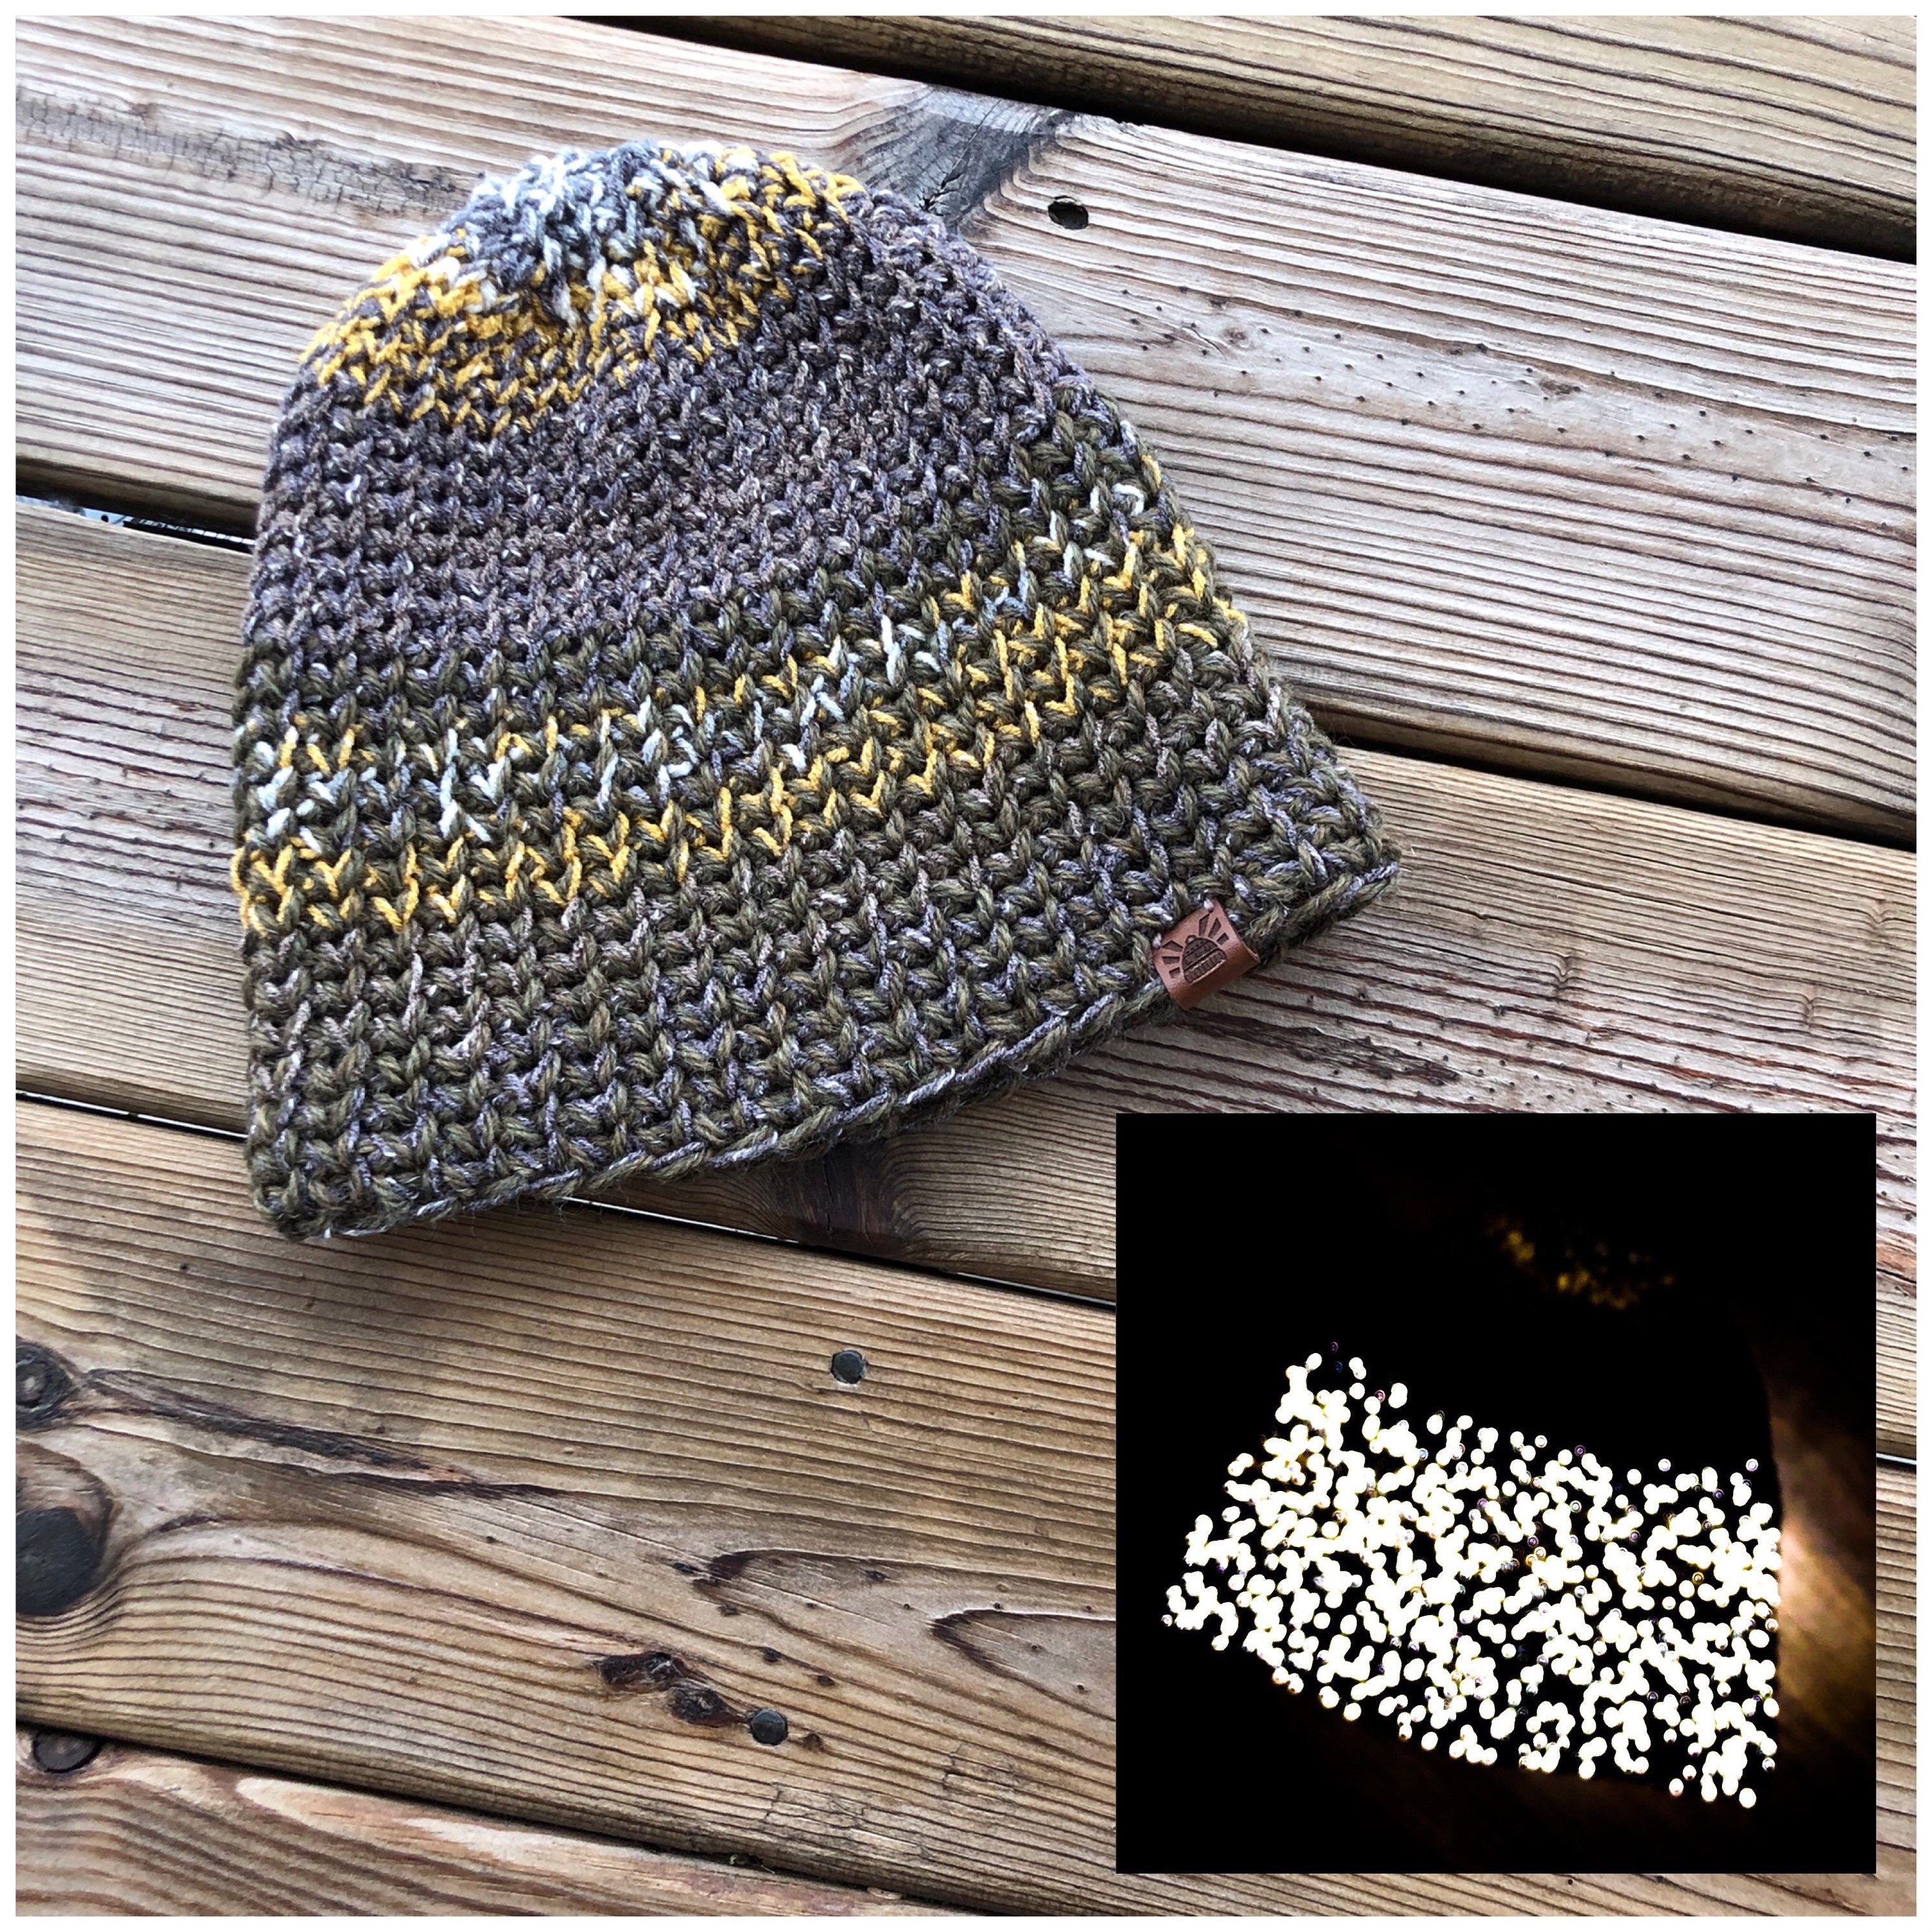 Knitting Woven Textile Cap Reflective Yarn Reflector Thread for